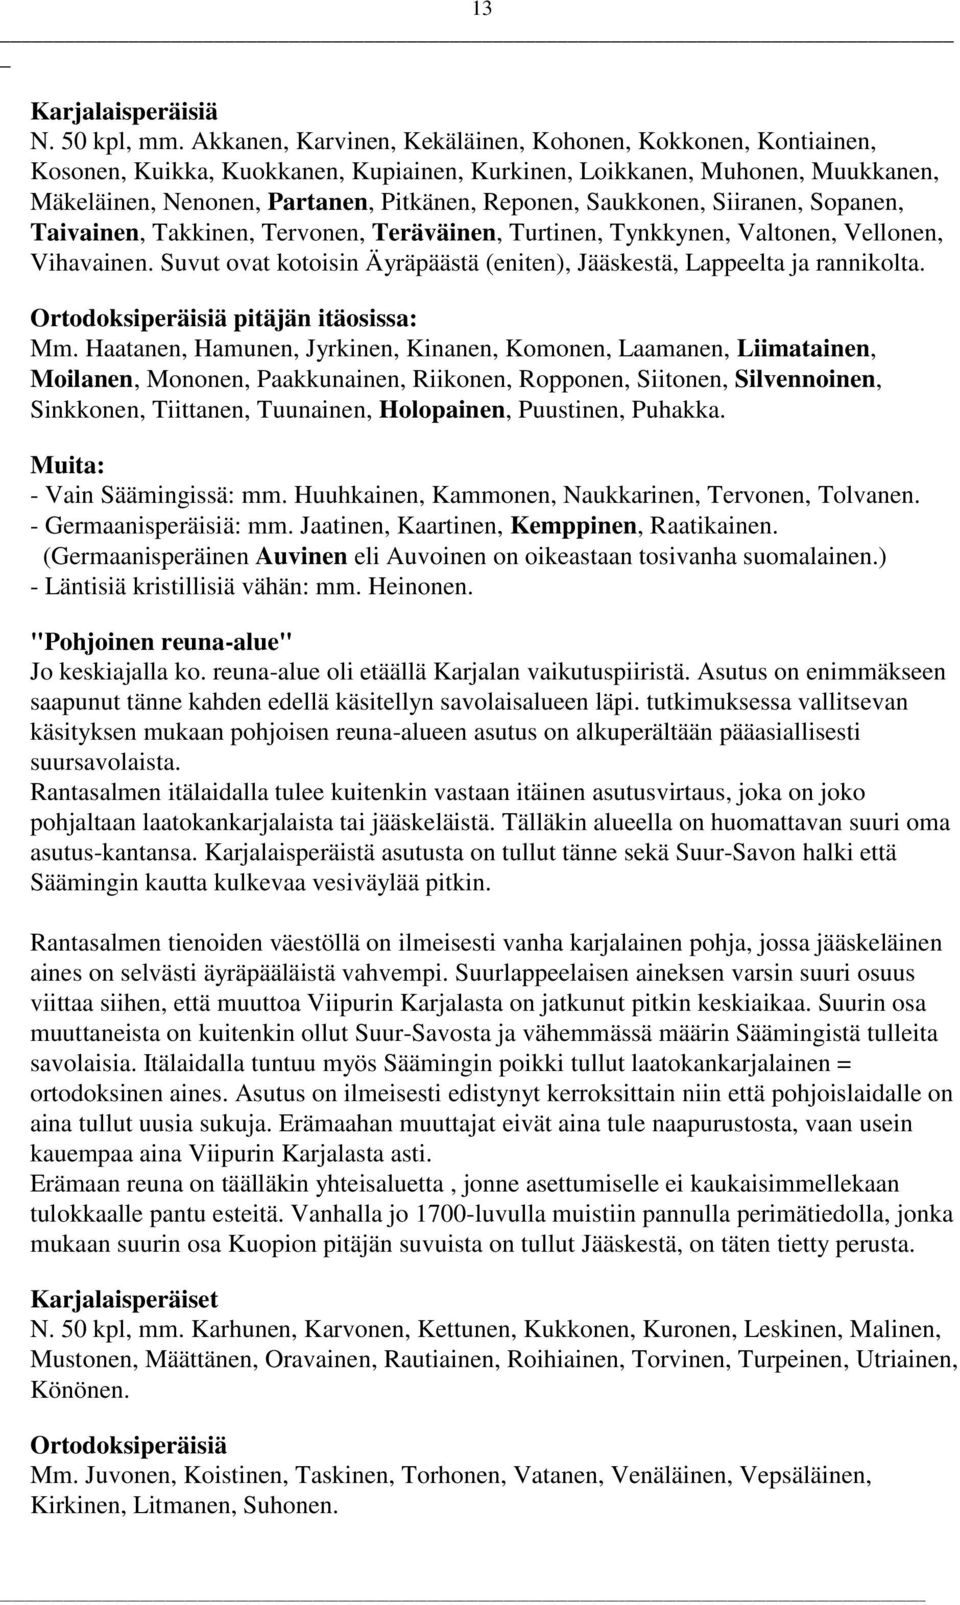 Saukkonen, Siiranen, Sopanen, Taivainen, Takkinen, Tervonen, Teräväinen, Turtinen, Tynkkynen, Valtonen, Vellonen, Vihavainen.